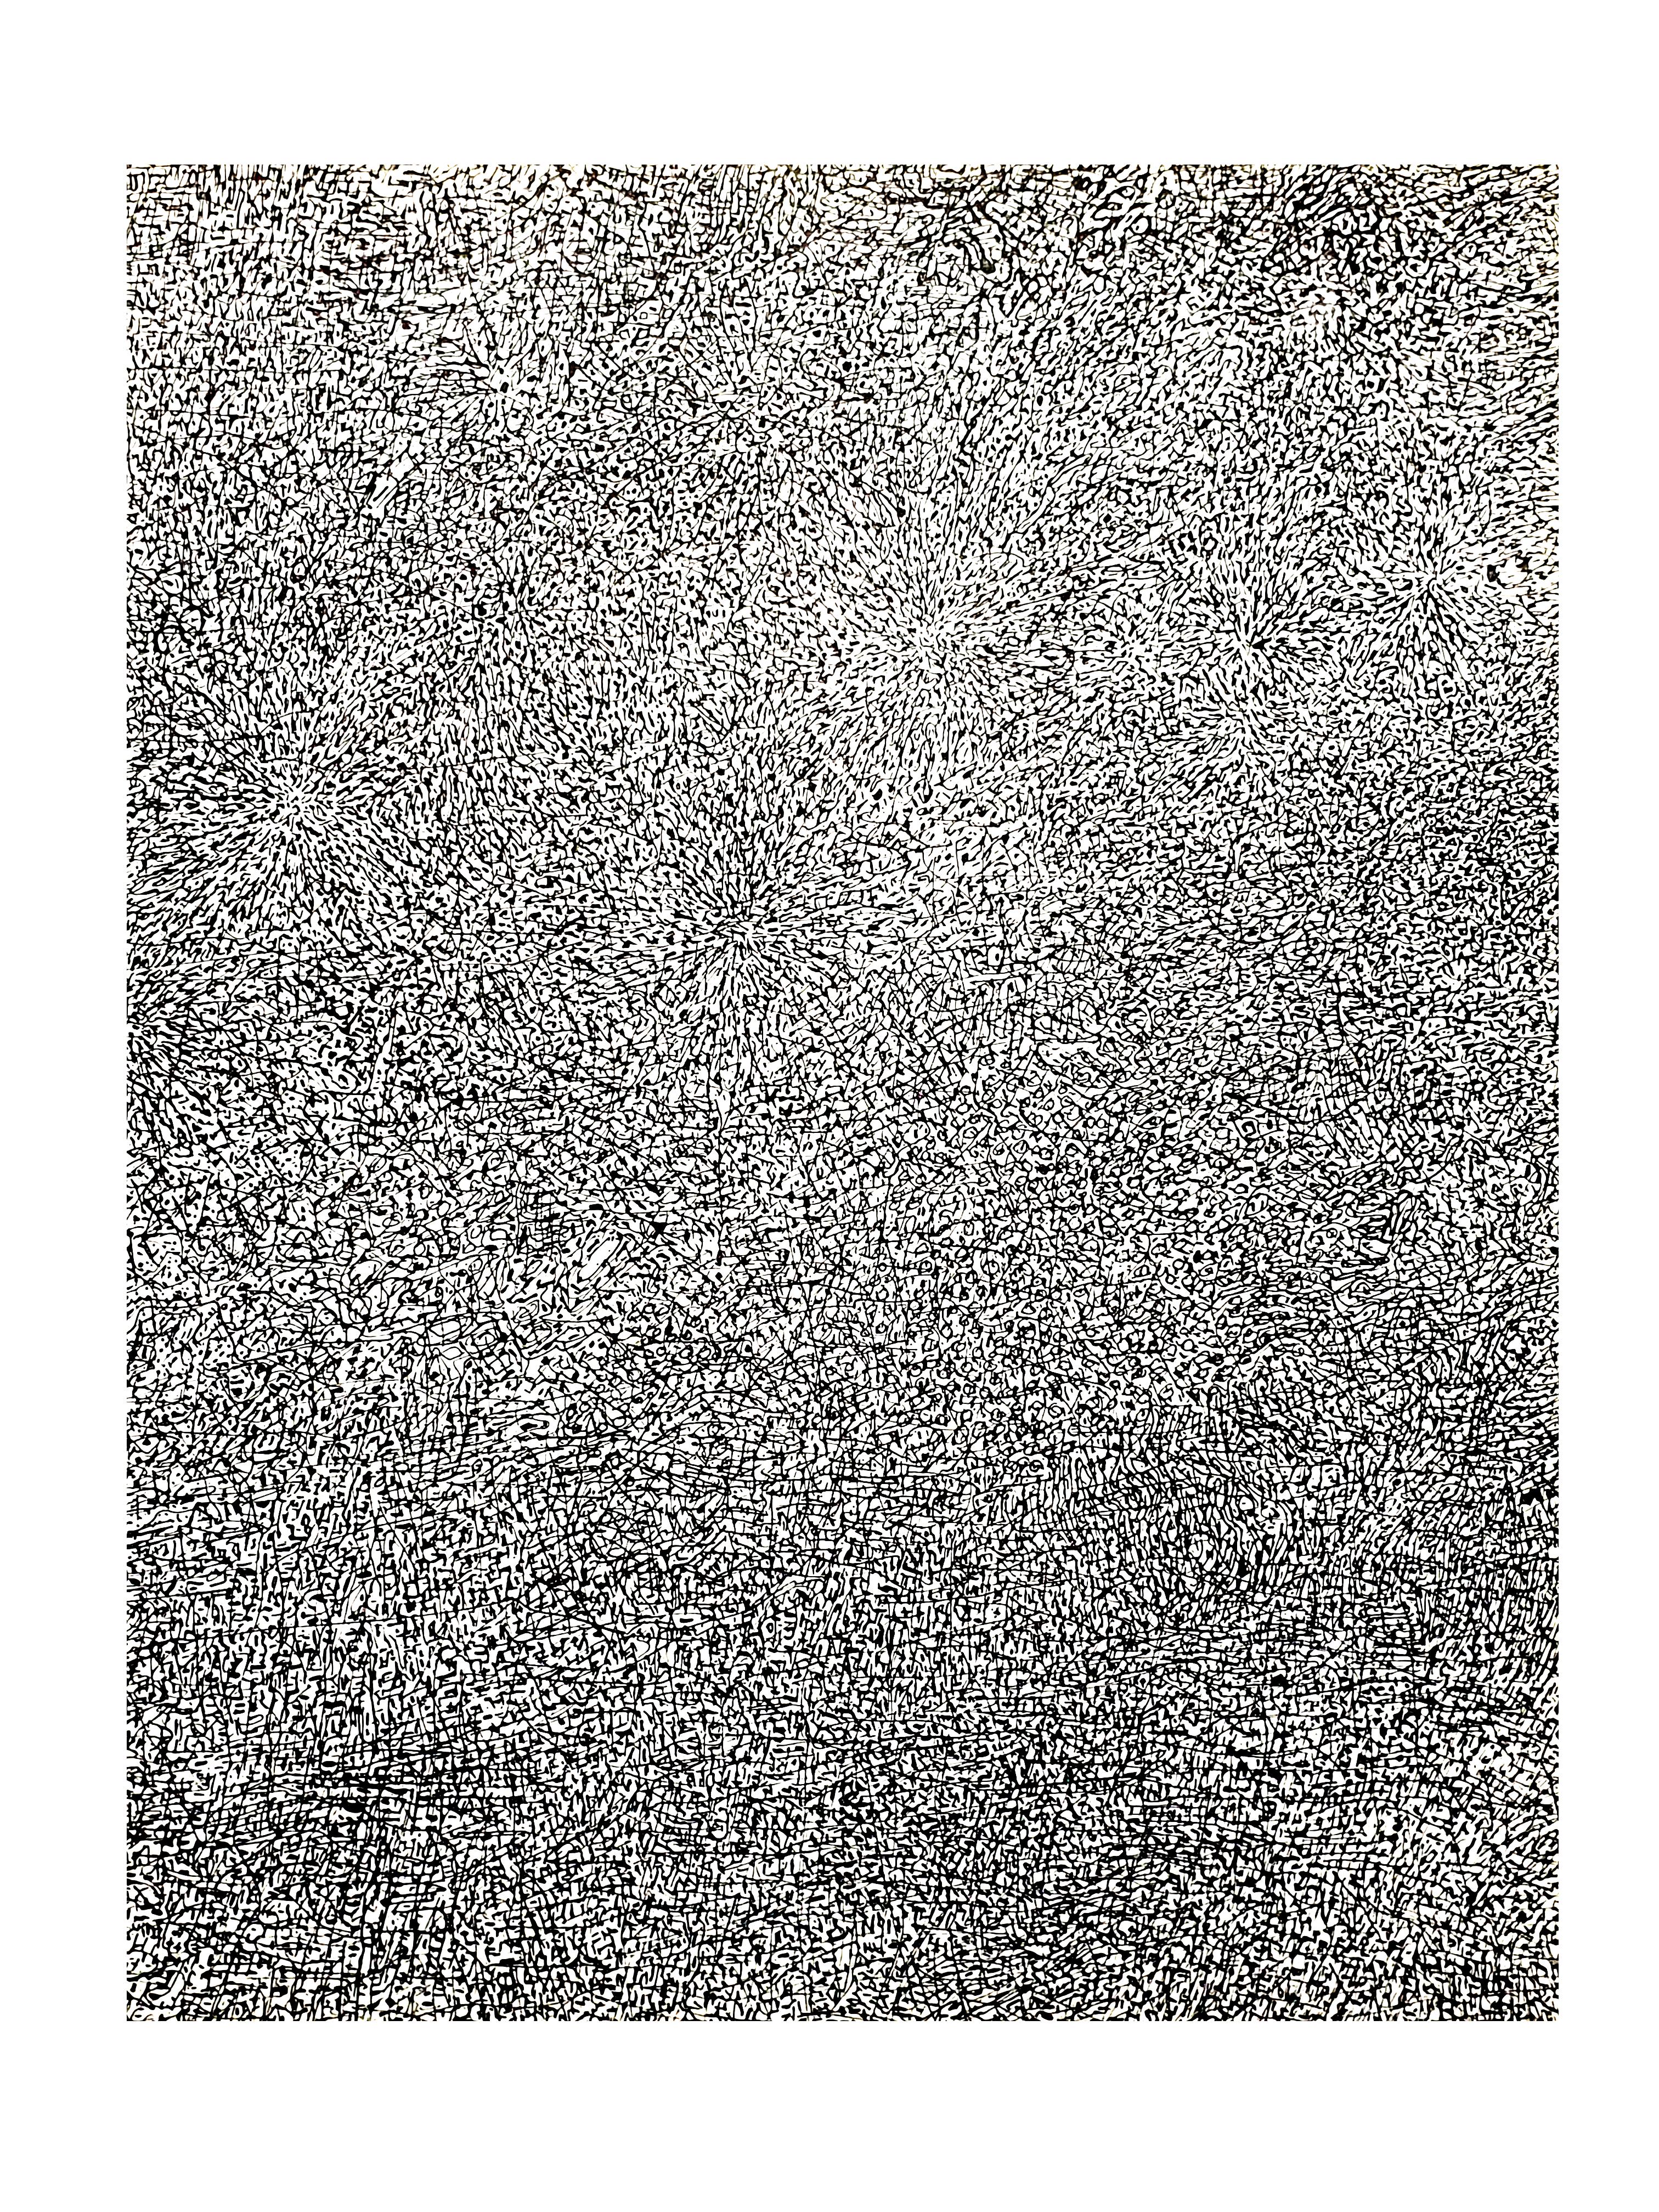 nach Jean Dubuffet - Wiese - Lithographie
1960
Abmessungen: 32 x 25 cm 
Ausgabe: G. di San Lazzaro.
Aus der Kunstzeitschrift XXème siècle
Unsigniert und nicht nummeriert wie ausgestellt